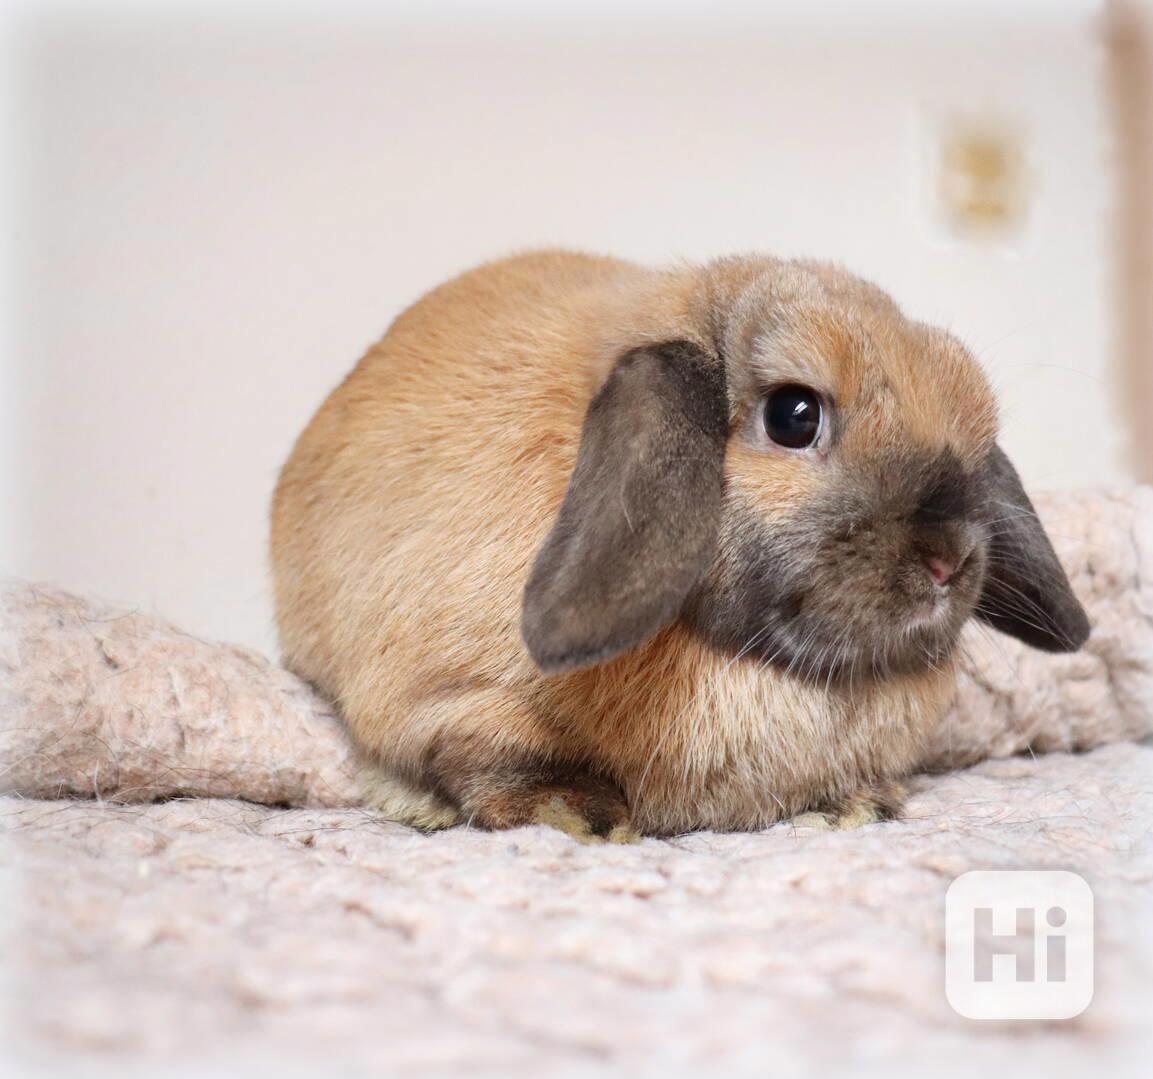 Minilop beránek - zakrslý králíček na prodej - foto 1